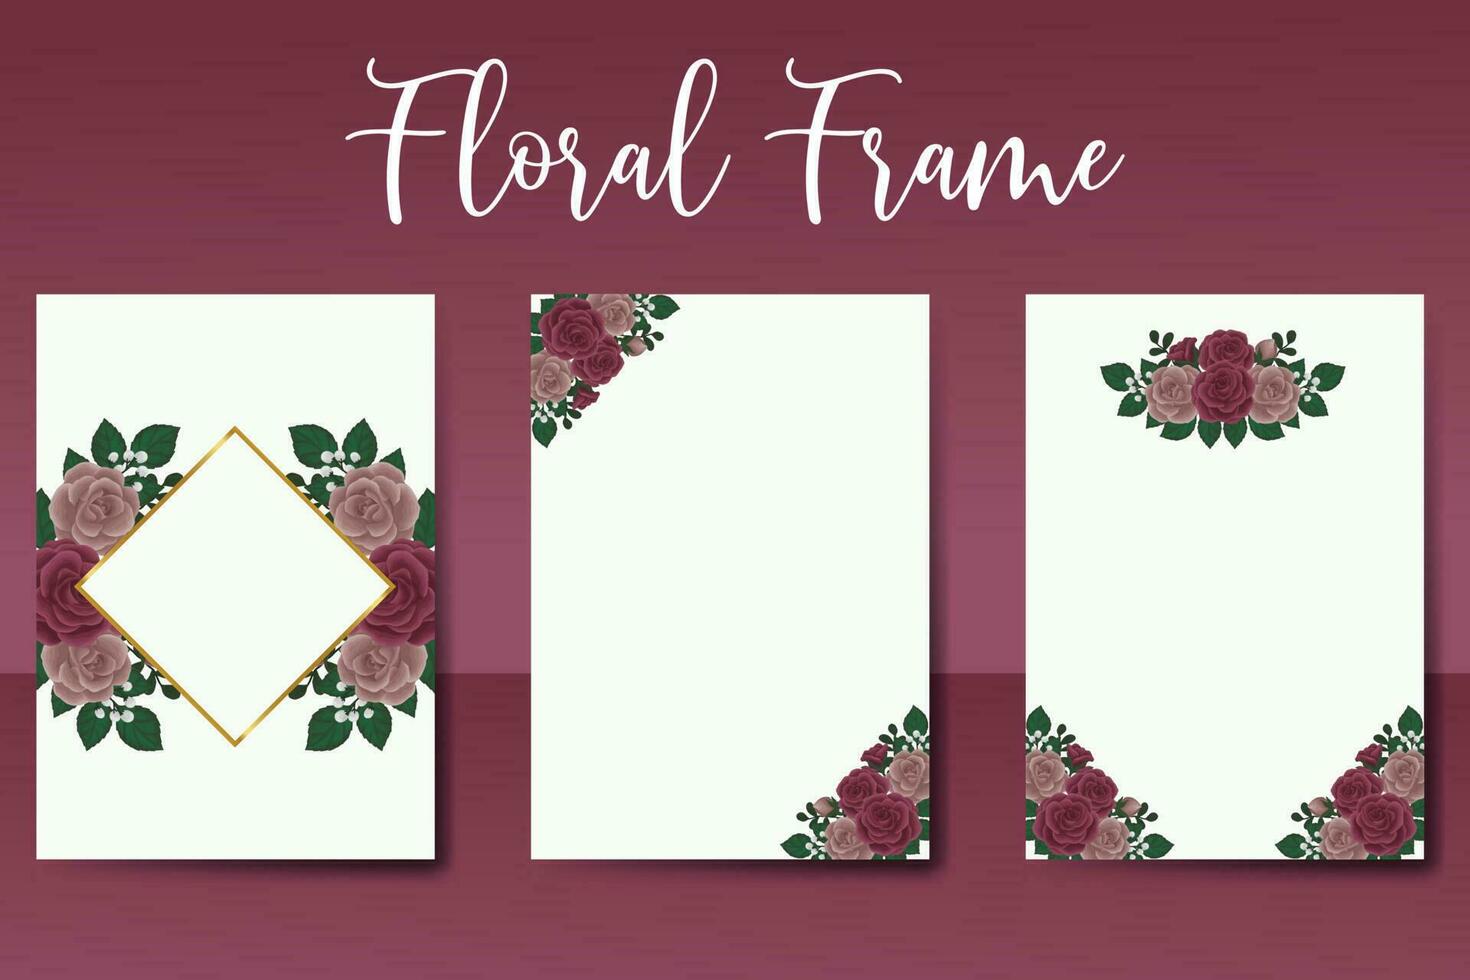 Boda invitación marco colocar, floral acuarela digital mano dibujado granate Rosa flor diseño invitación tarjeta modelo vector